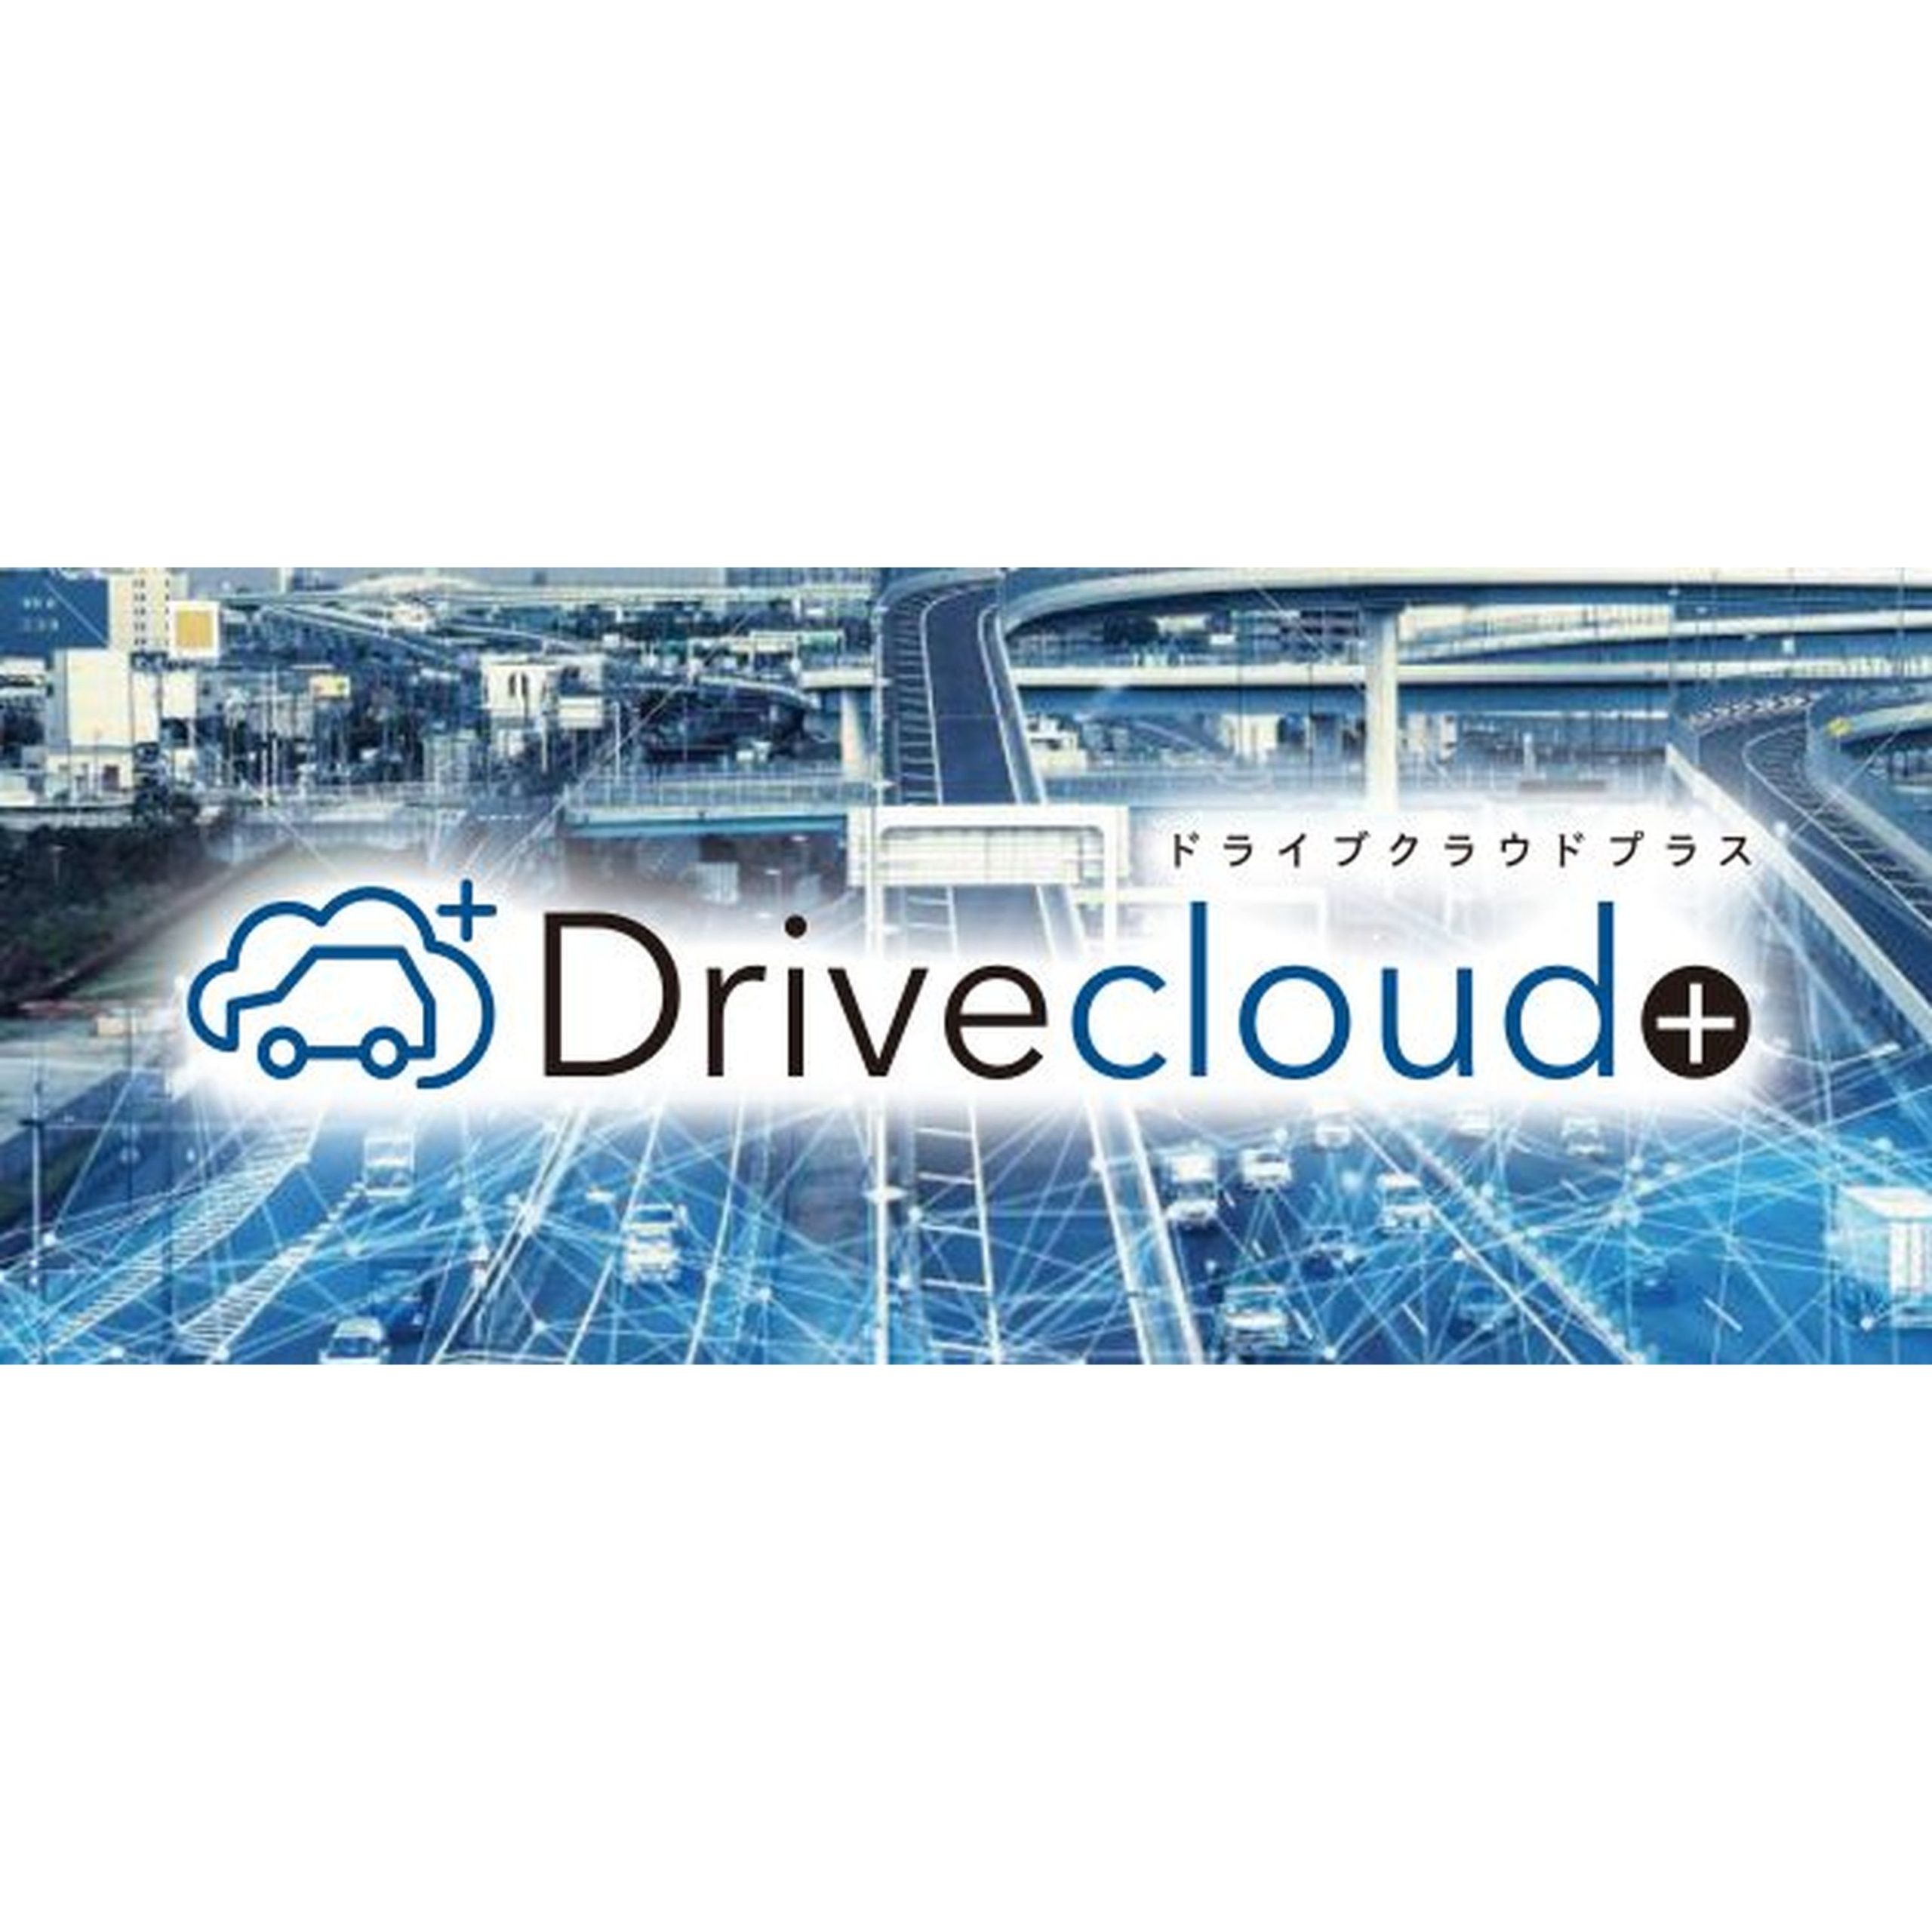 Drive Cloud+